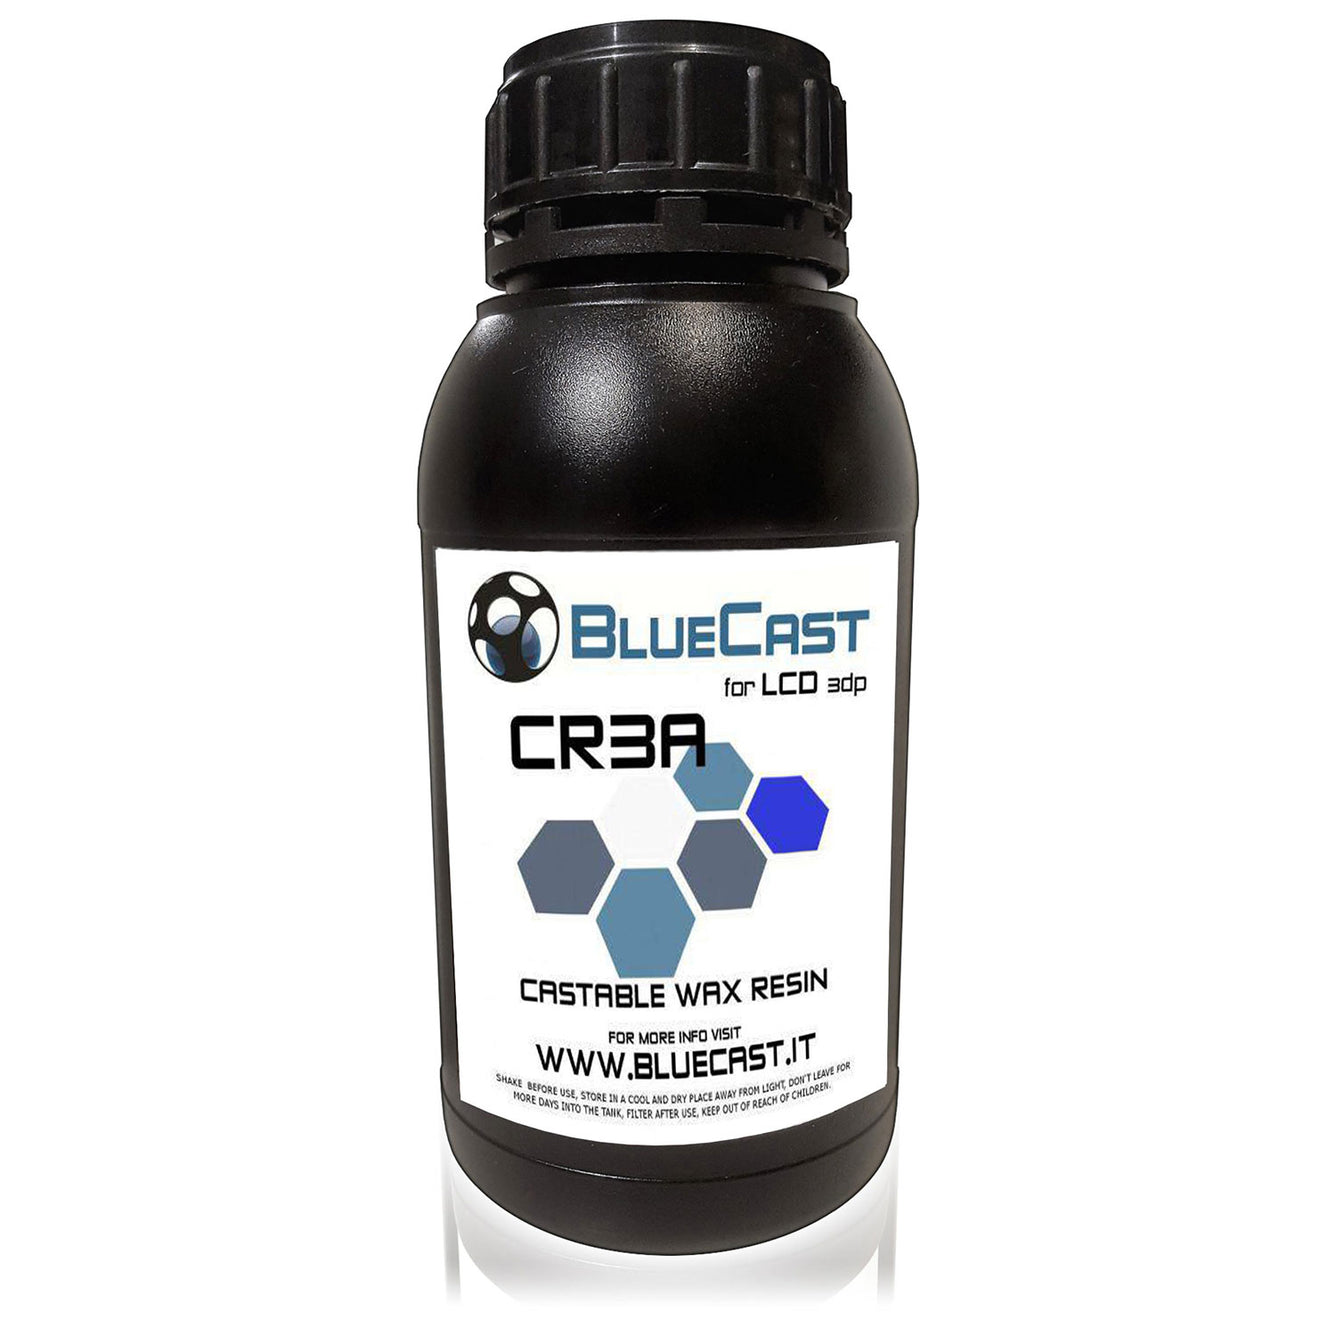 BlueCast Cr3a Castable LCD Resin